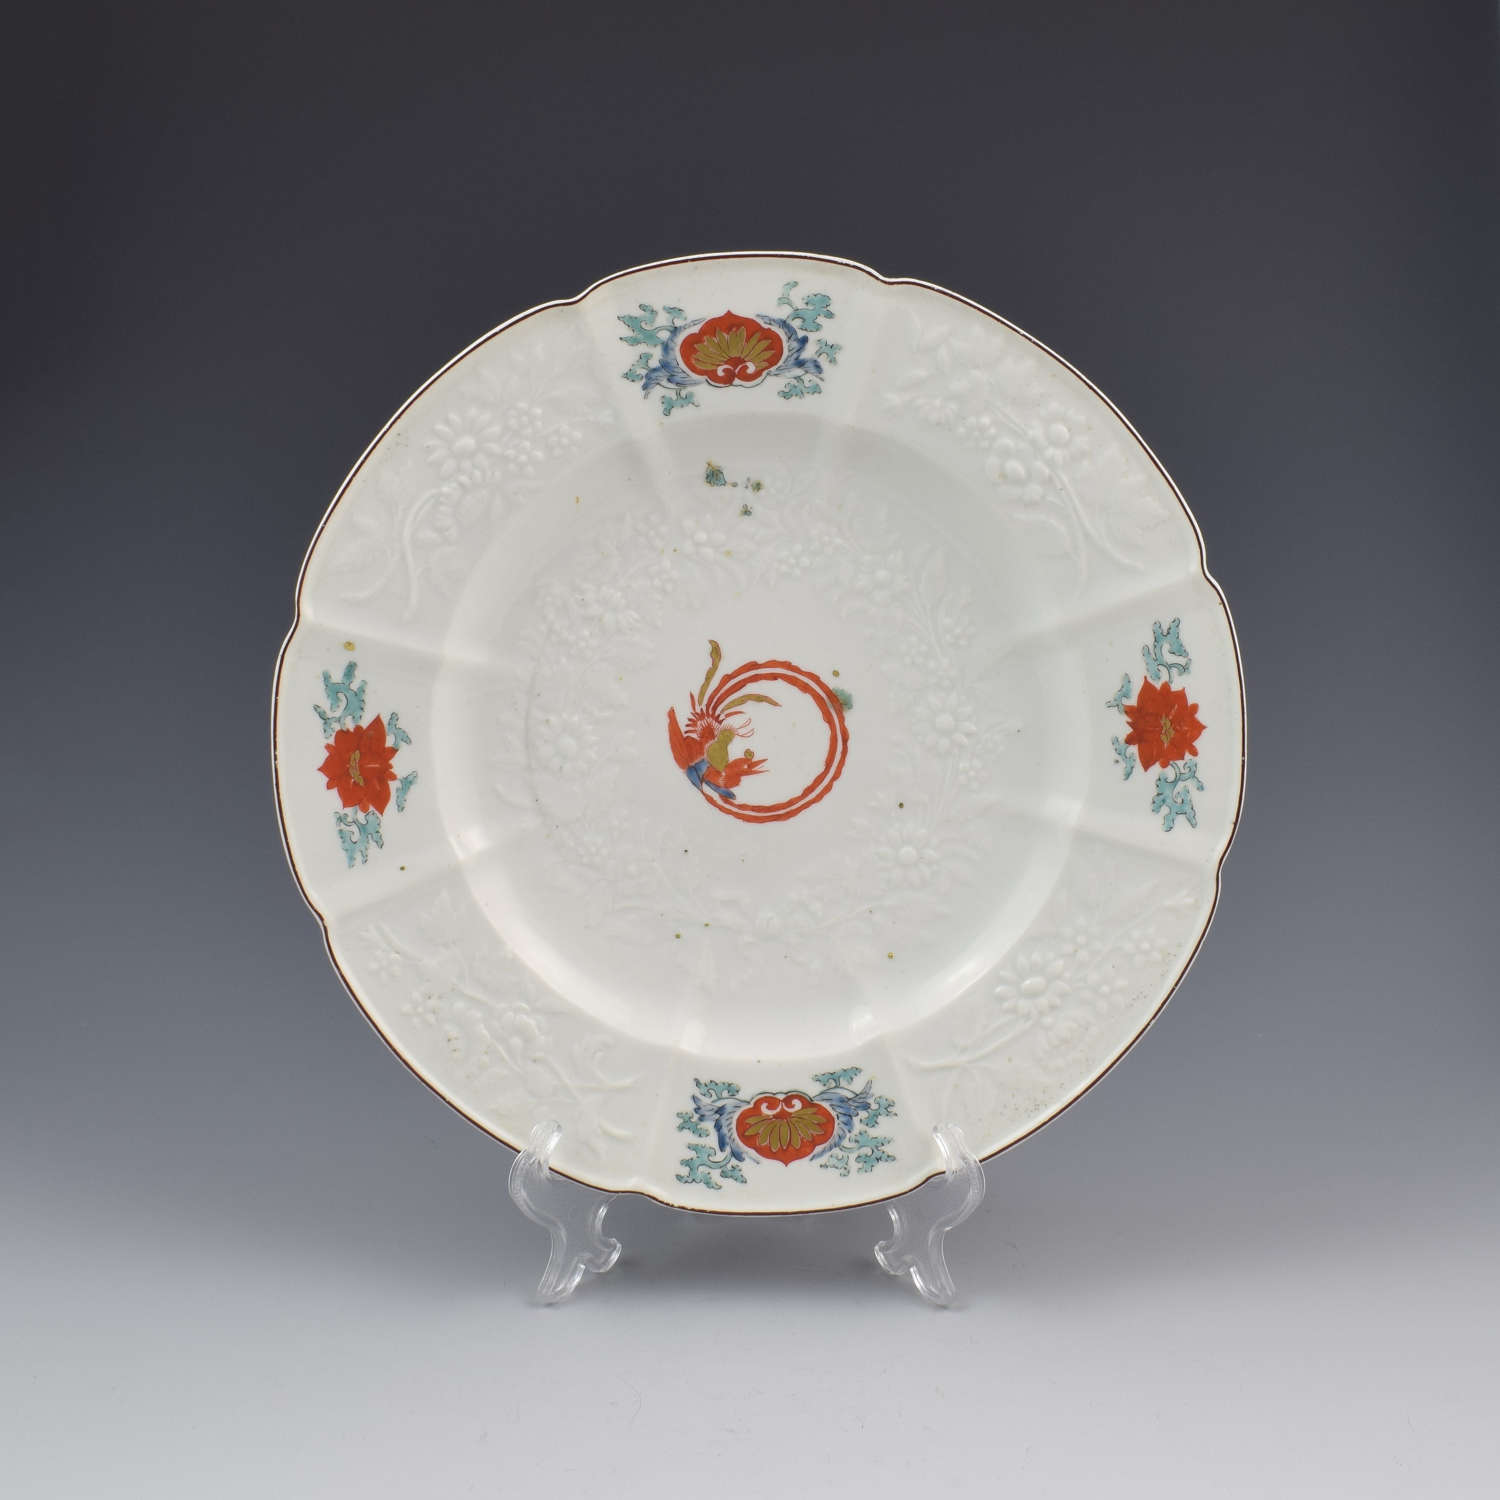 Chelsea Porcelain Kakiemon Damask'd Plate Coiled Phoenix c.1754